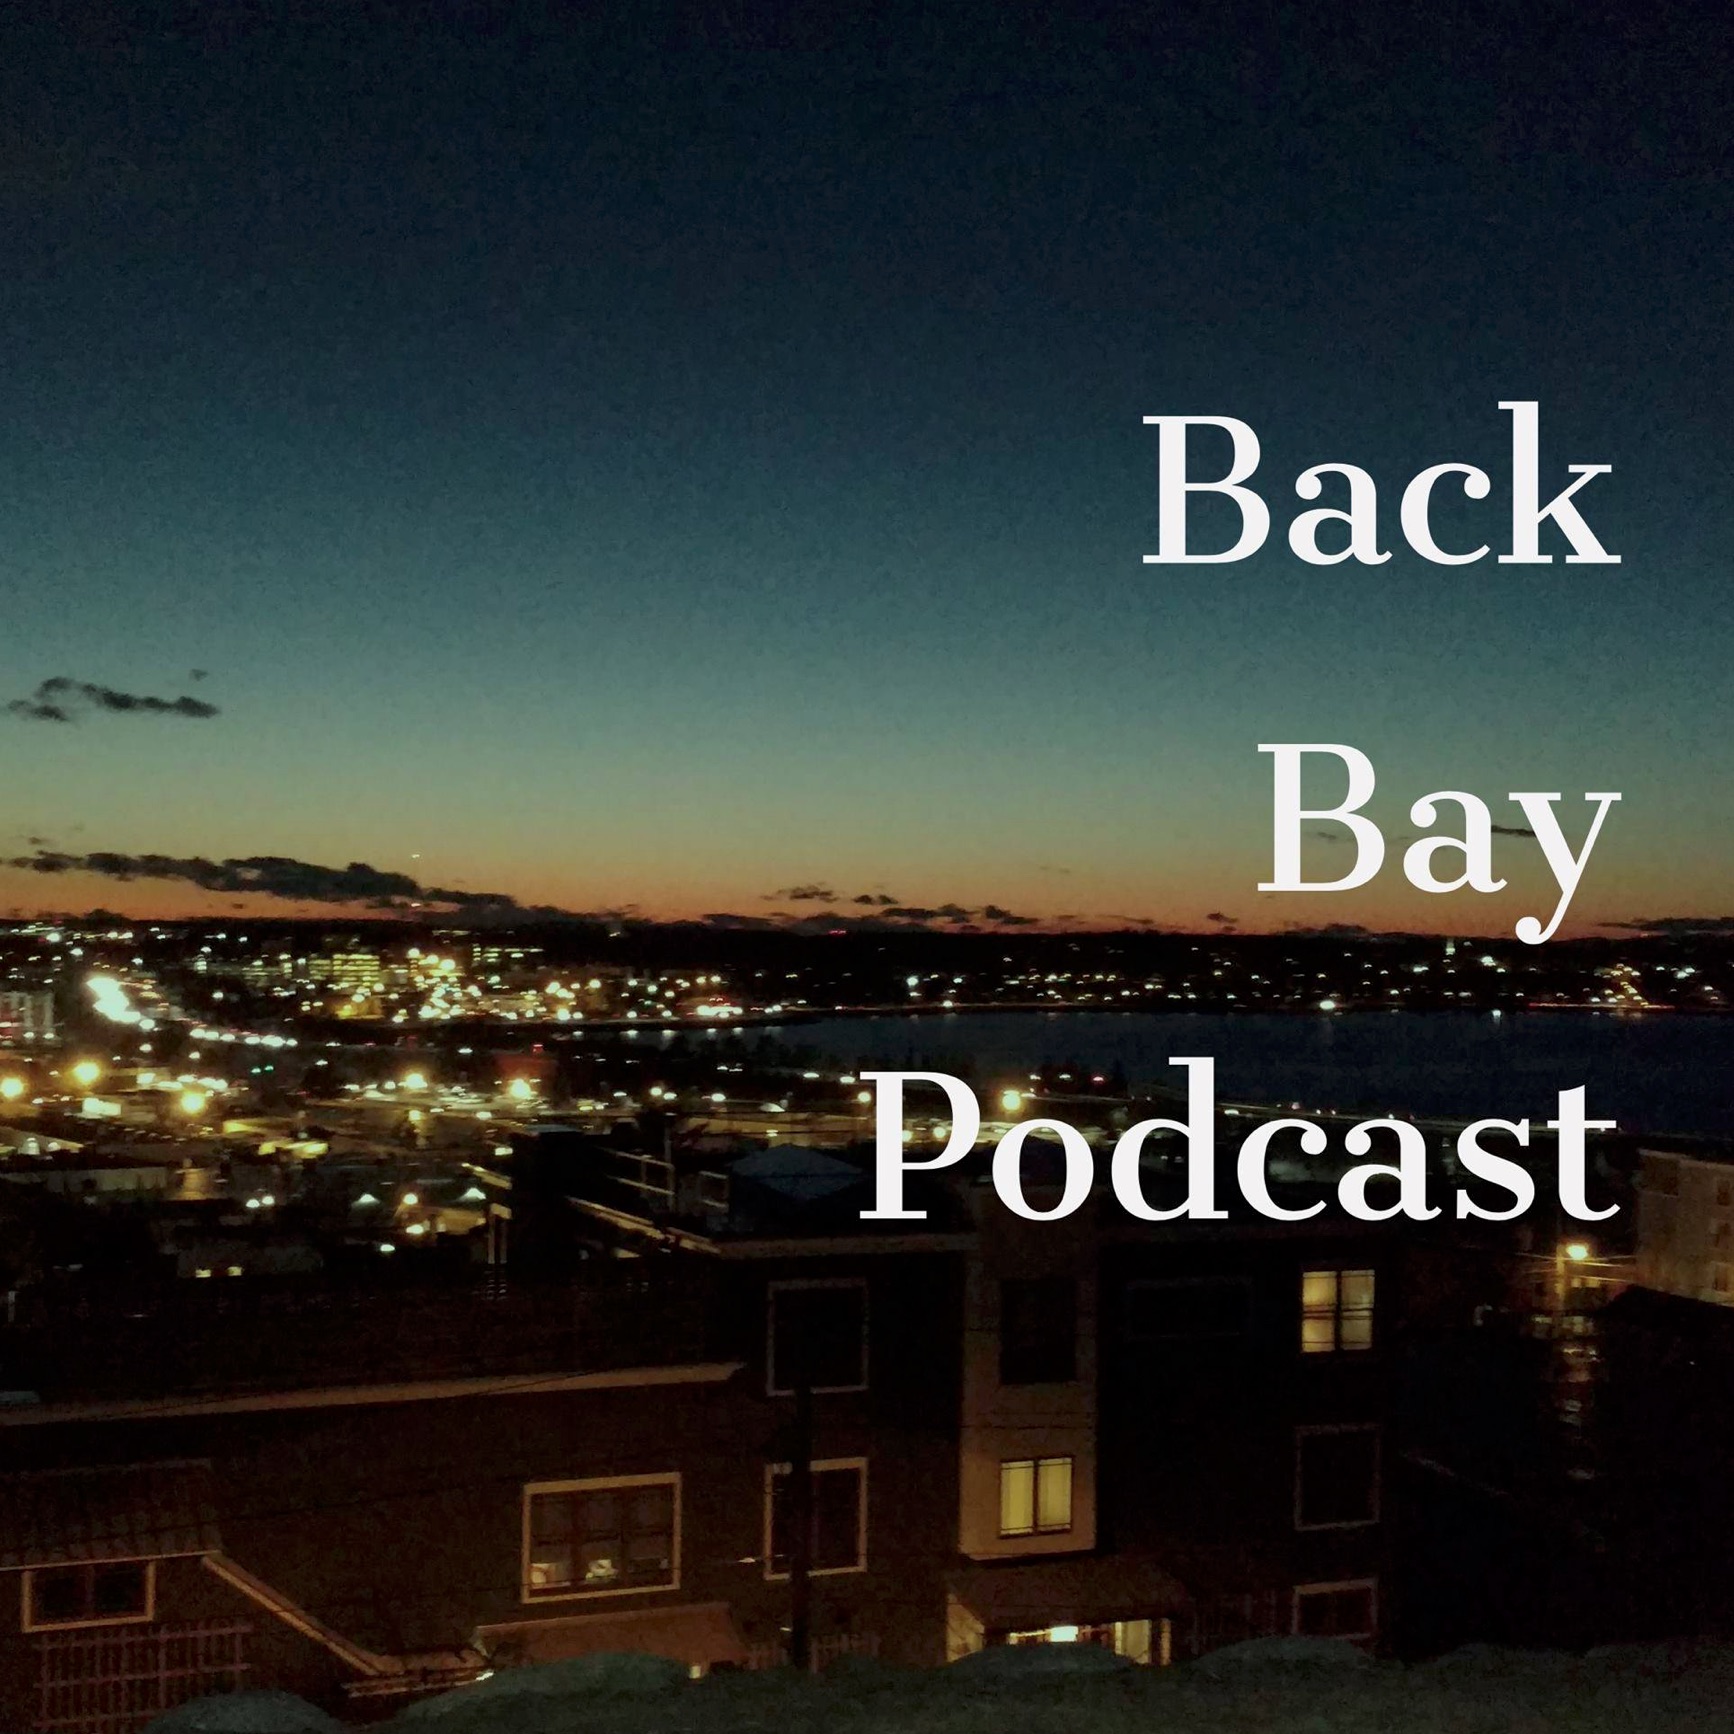 Back Bay Podcast